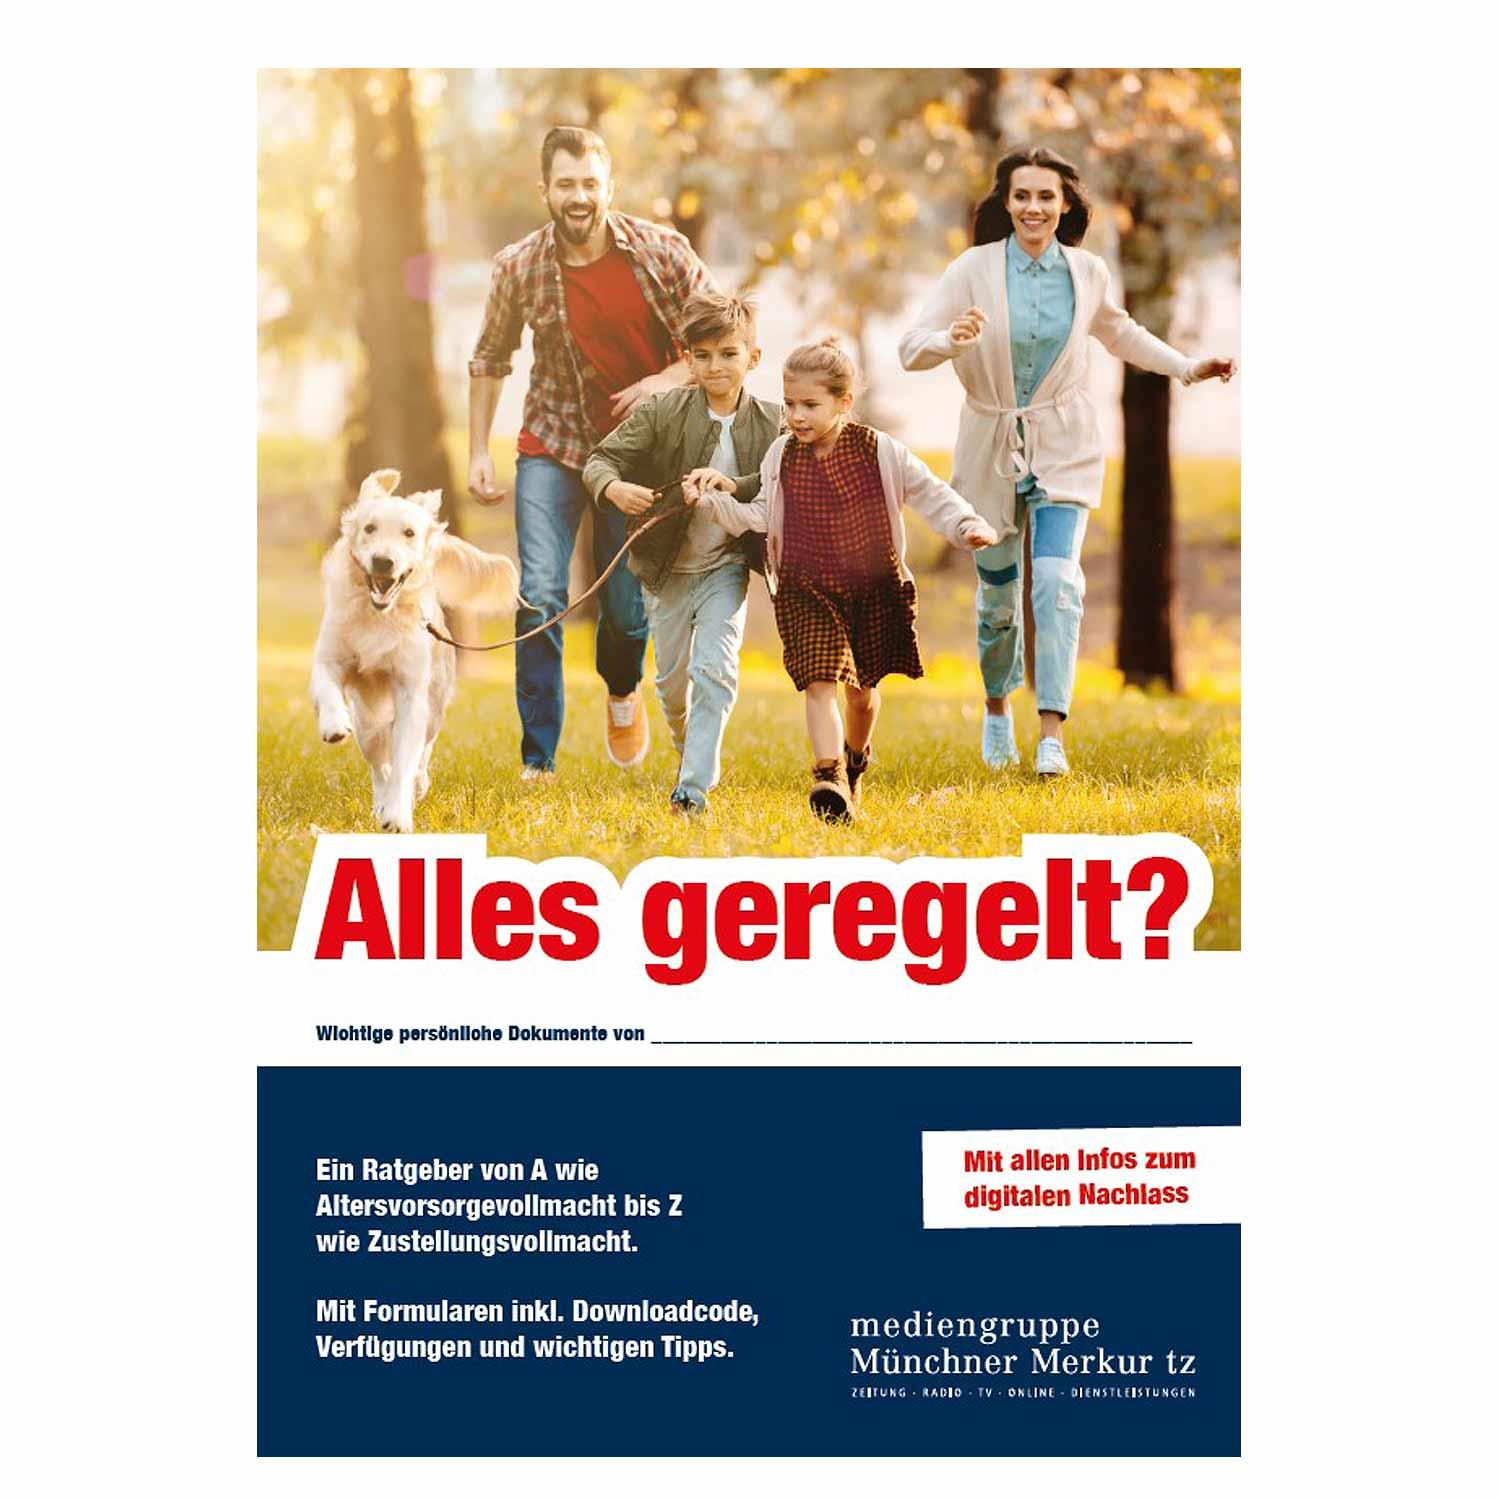 Magazin "Ratgeber: Alles geregelt?" - bavariashop - mei LebensGfui